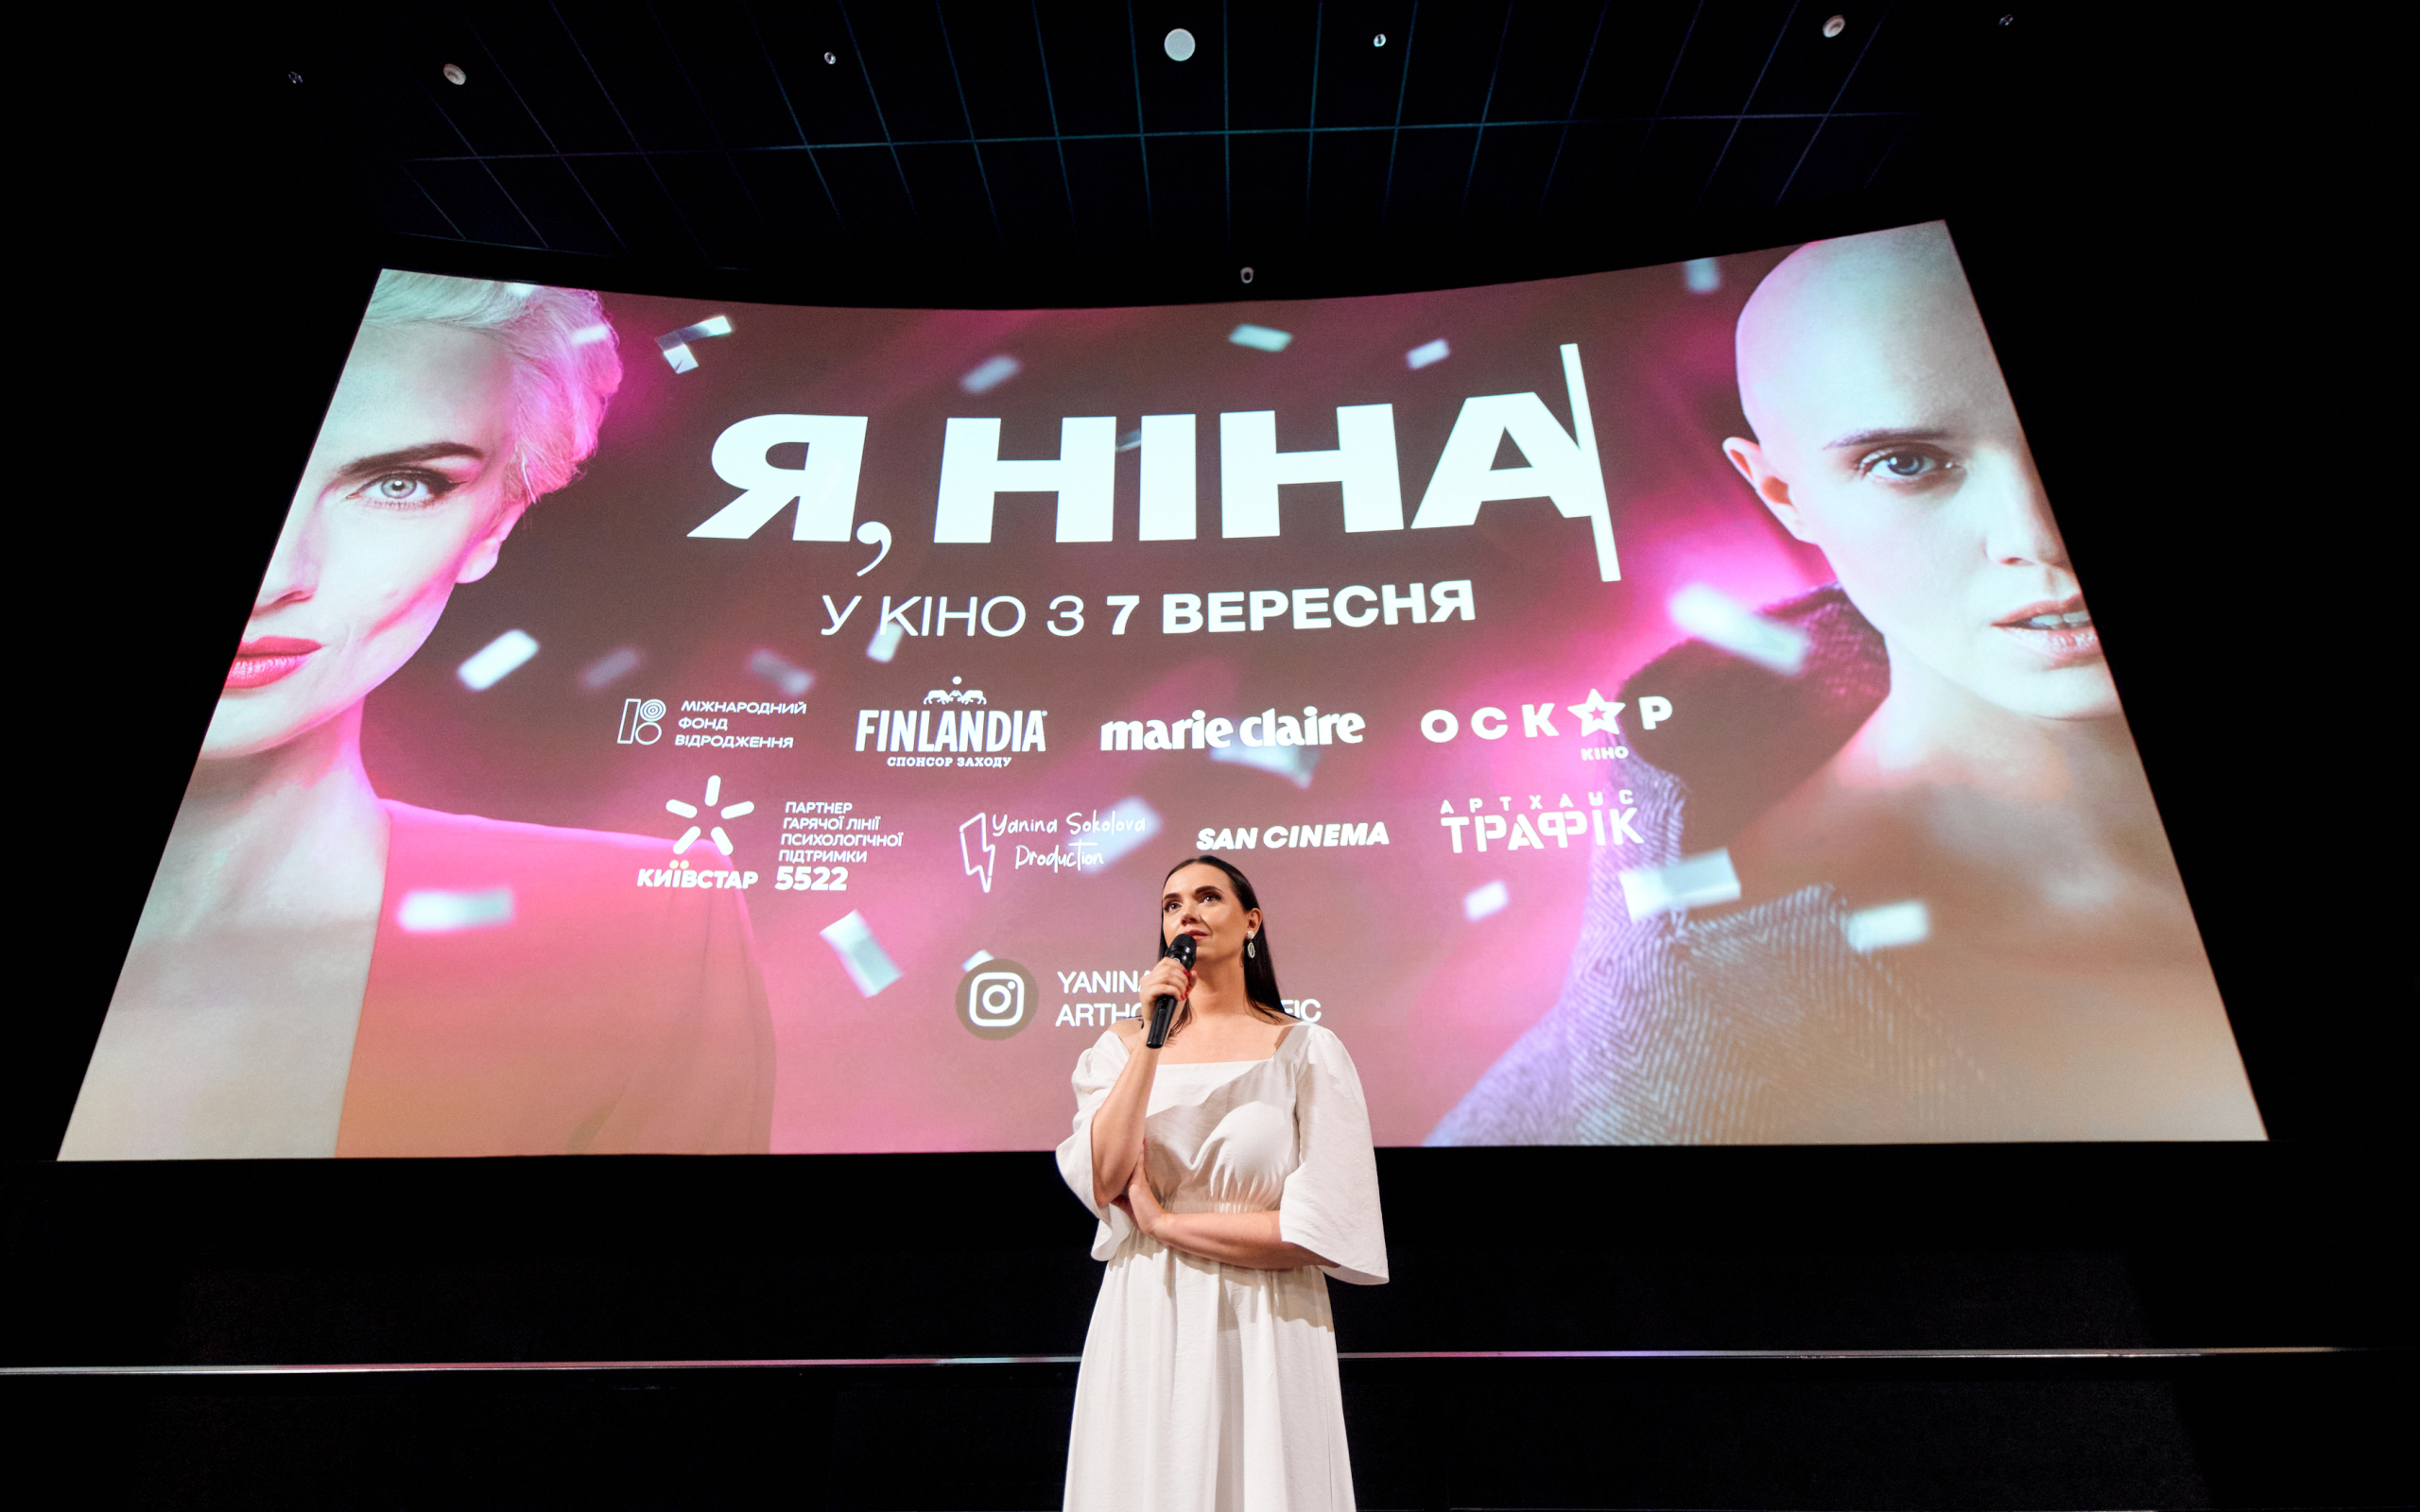 Прем’єра драми «Я, Ніна», знятої за мотивами особистої історії Яніни Соколової